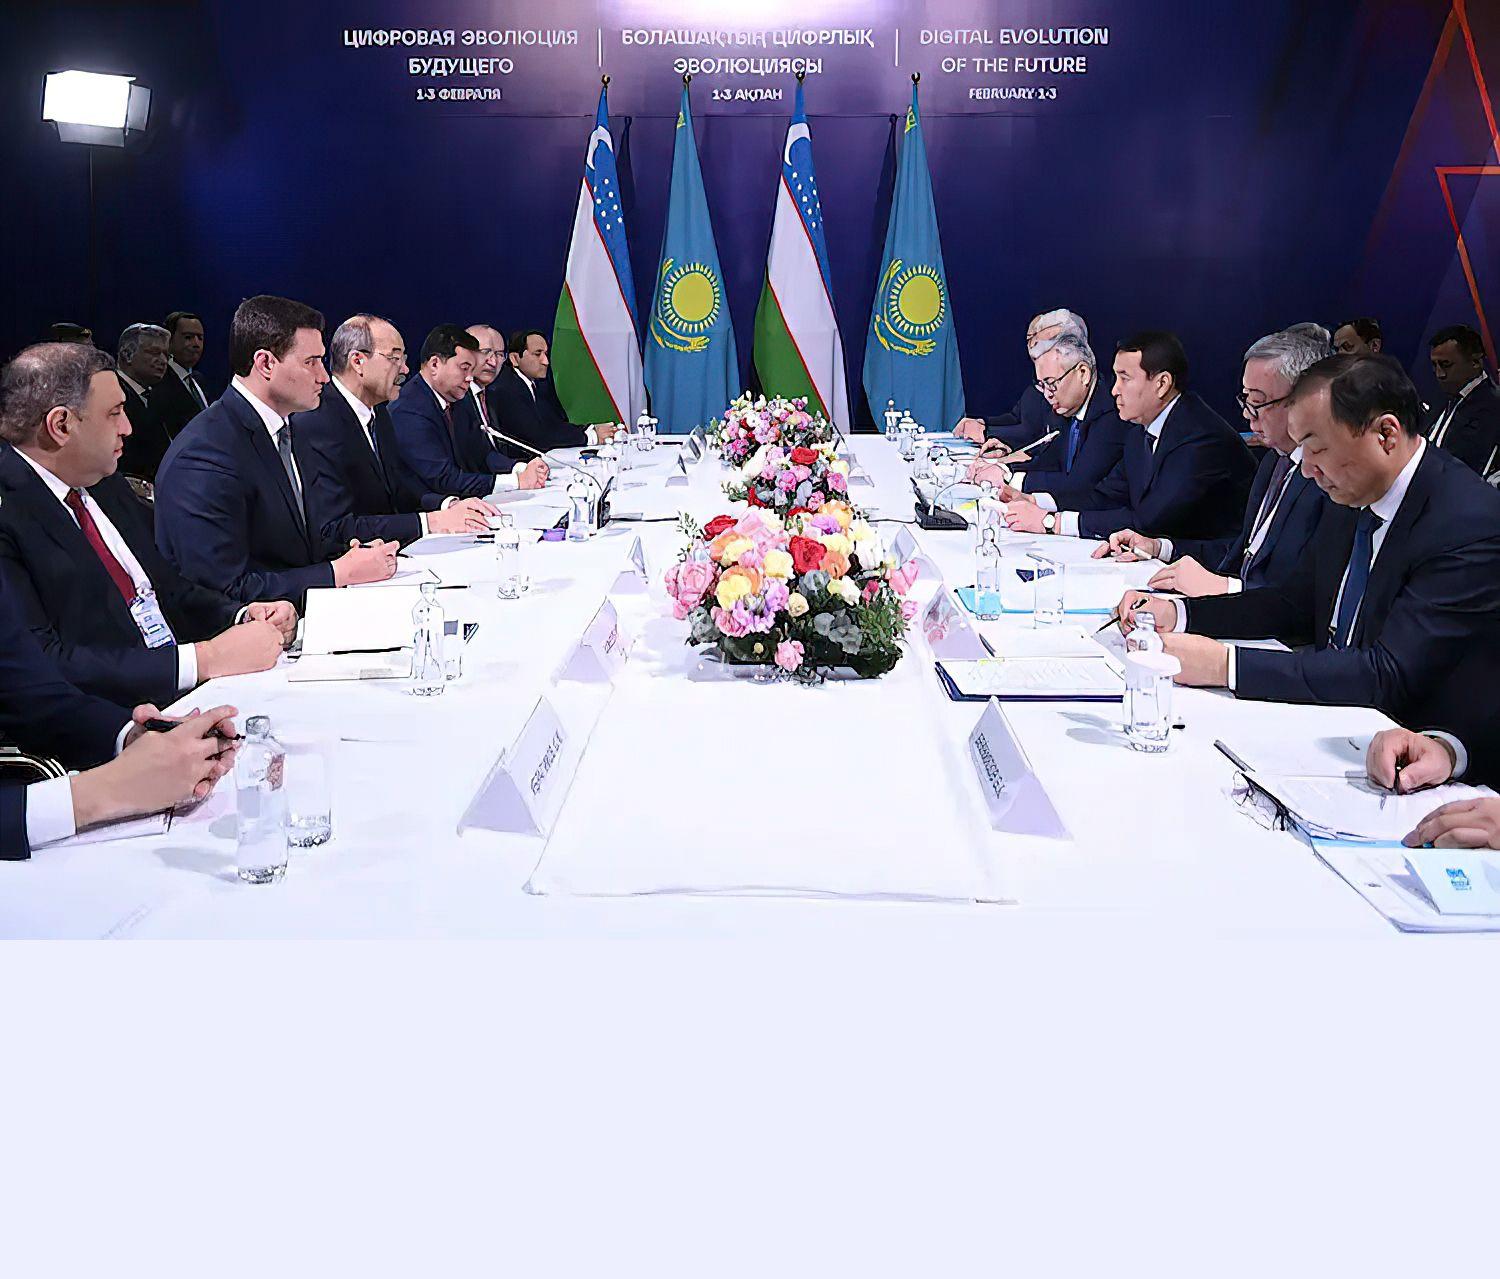 Абдулла Арипов встретился с Премьер-министром Казахстана в Алматы